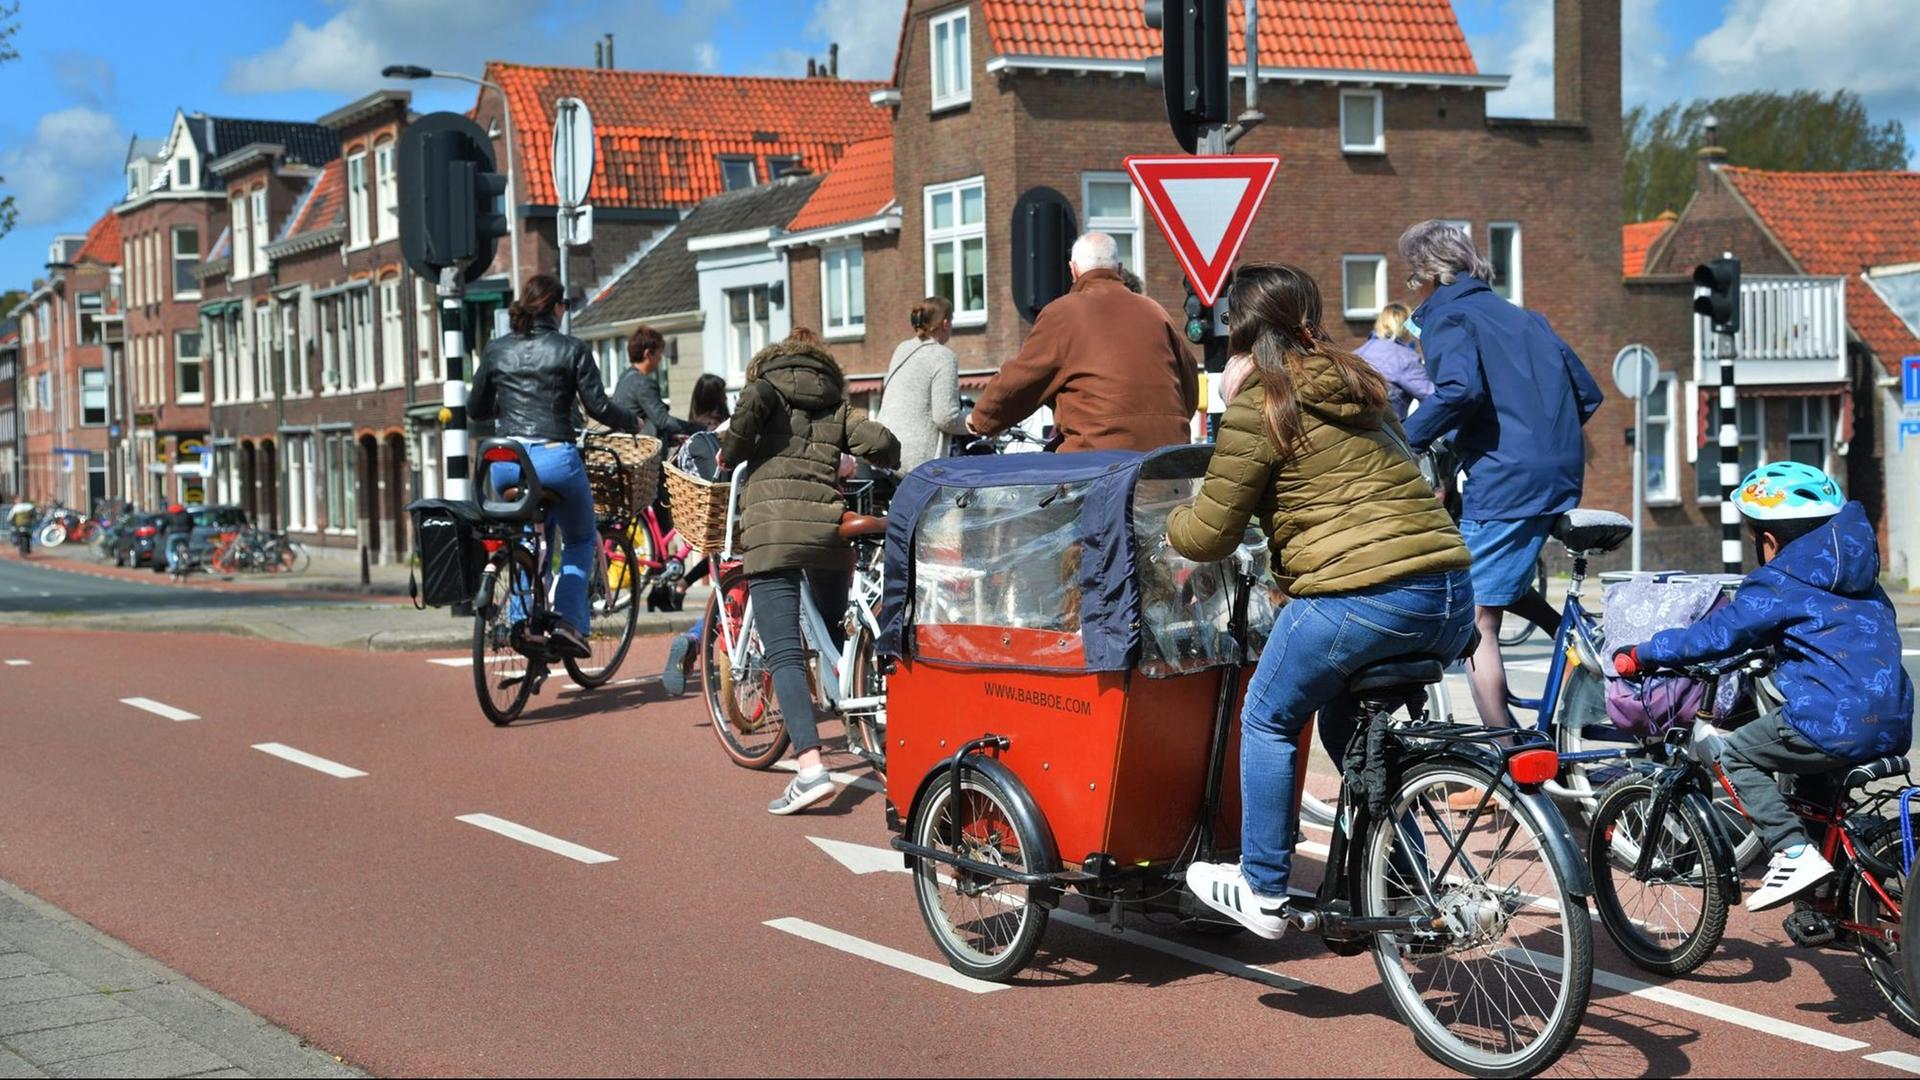 Eine Straßenszene aus den Niederlanden, die Radfahrende unterschiedlichen Alters auf einem großzügig angelegten Radweg zeigt.